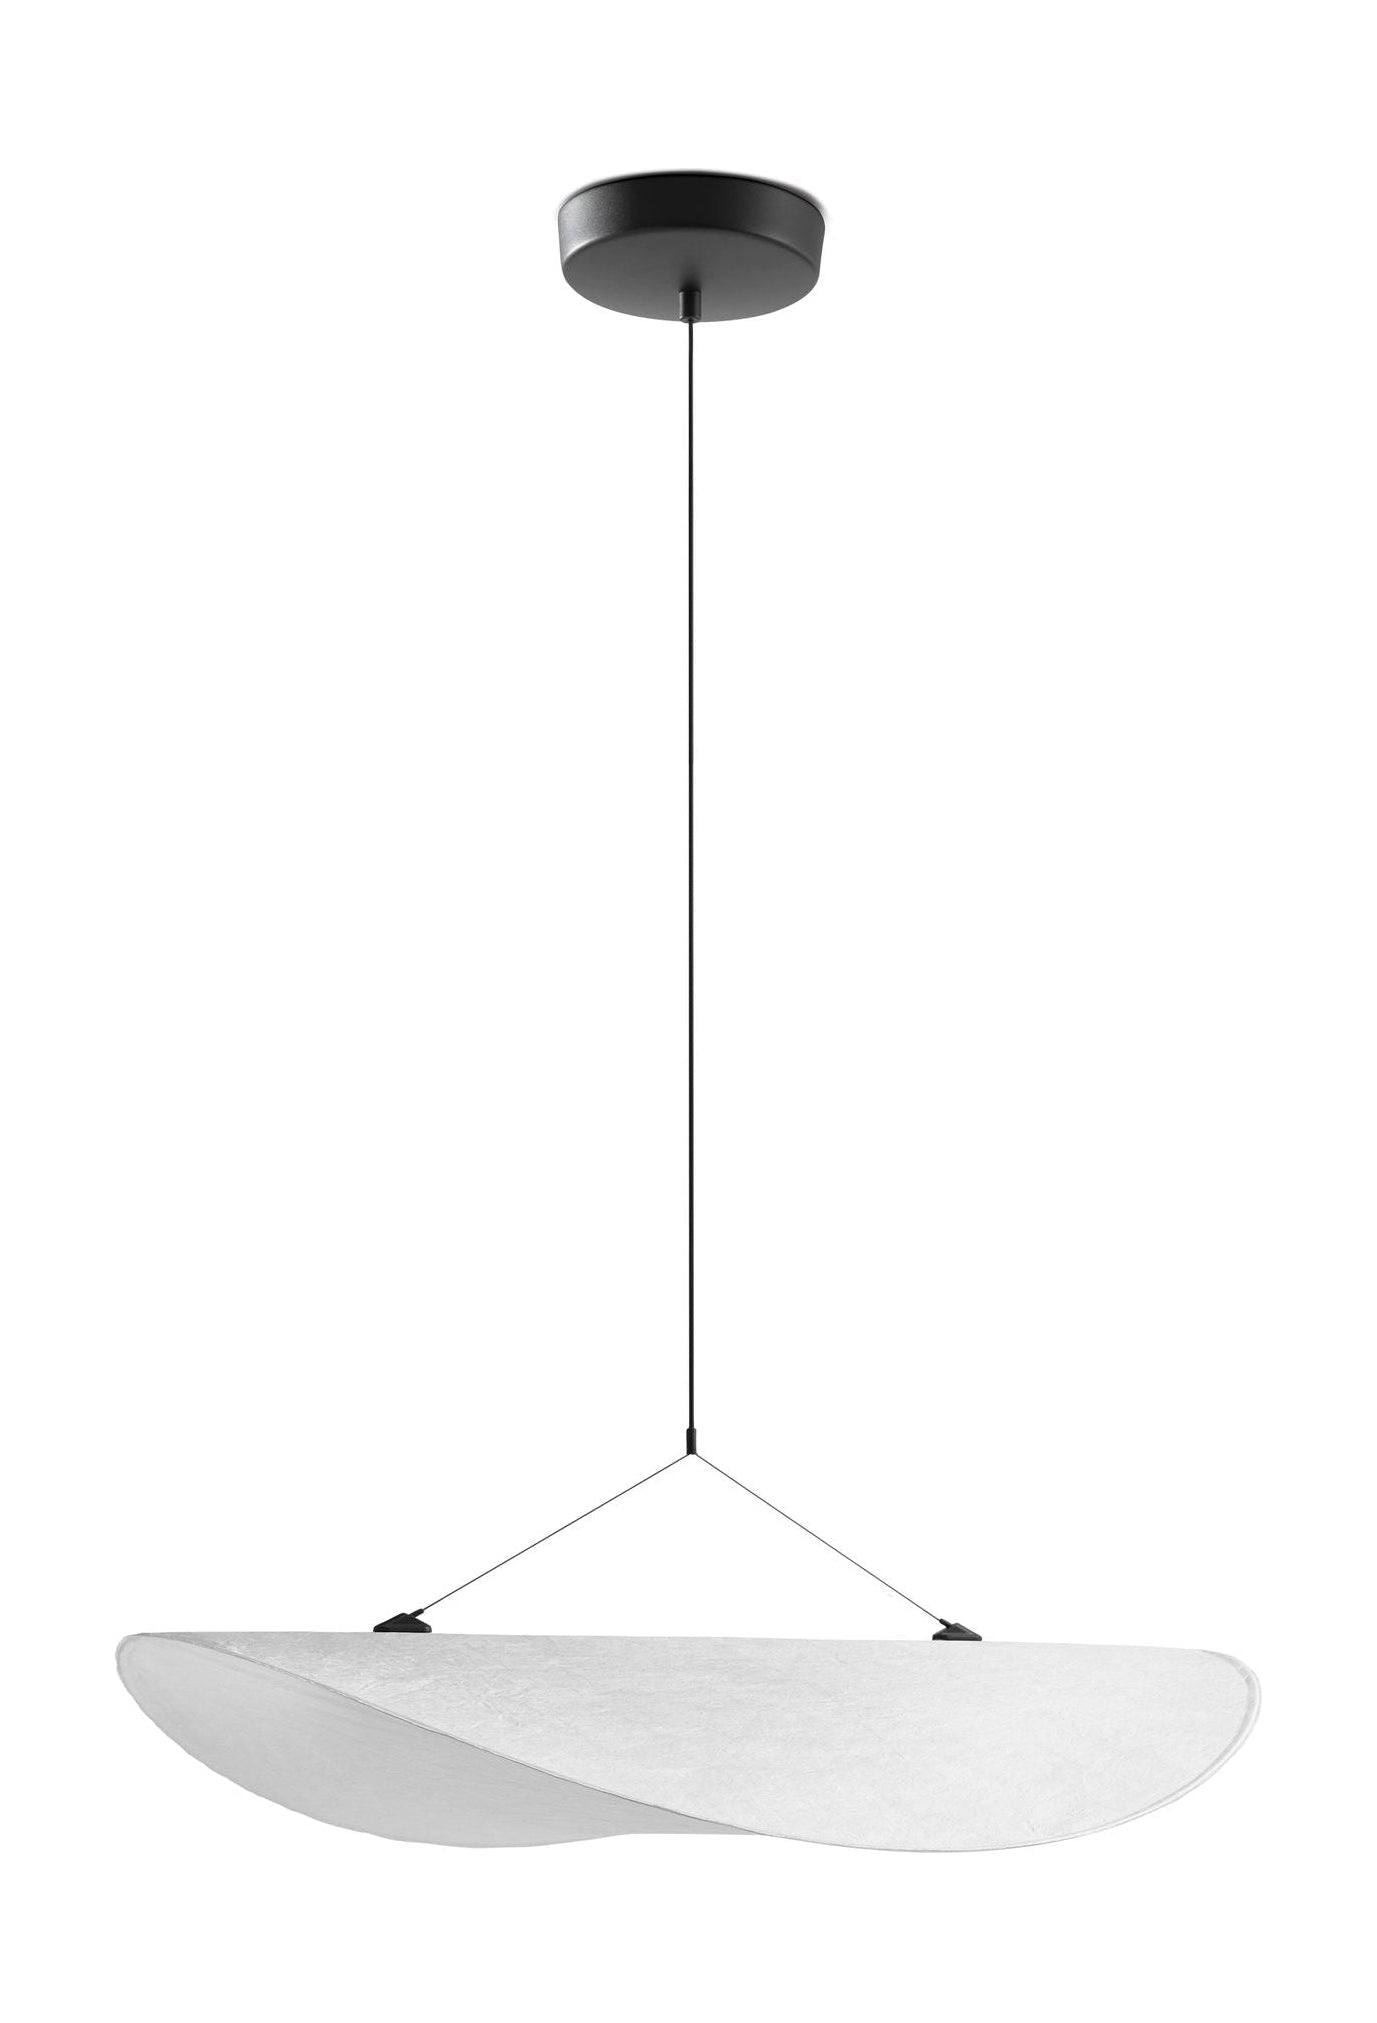 New Works Angespannte Anhängerlampe, Ø 70 cm